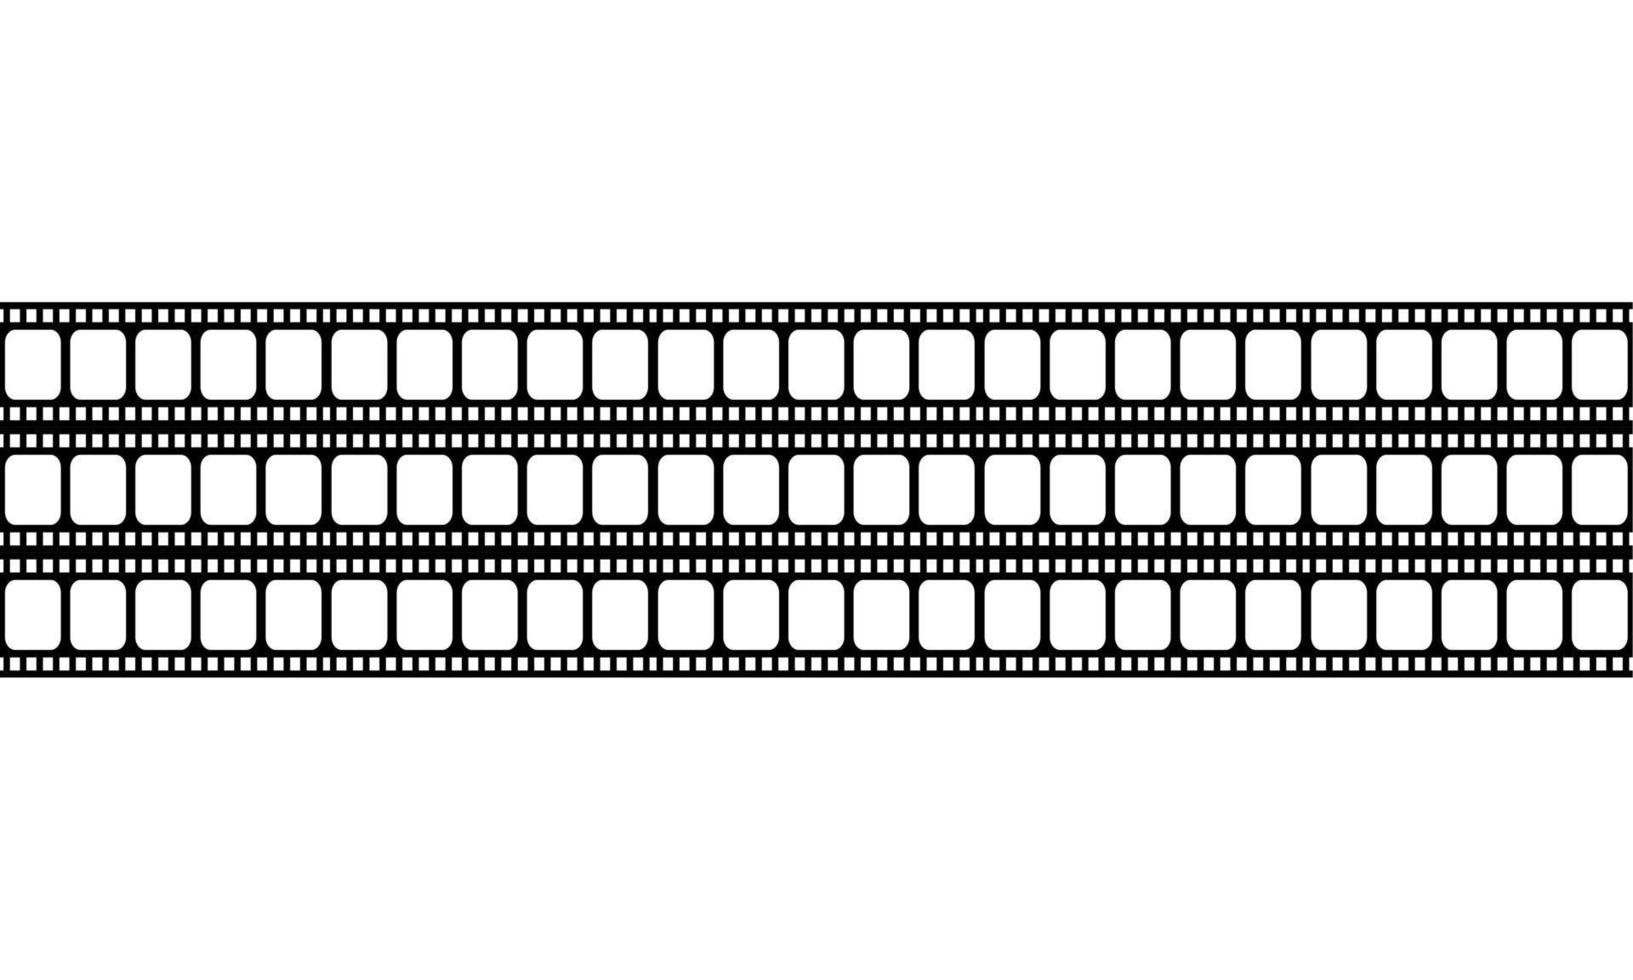 naadloos filmstrip motieven patroon voor overladen, decoratie, interieur, buitenkant, achtergrond, behang, Hoes of grafisch ontwerp element. vector illustratie